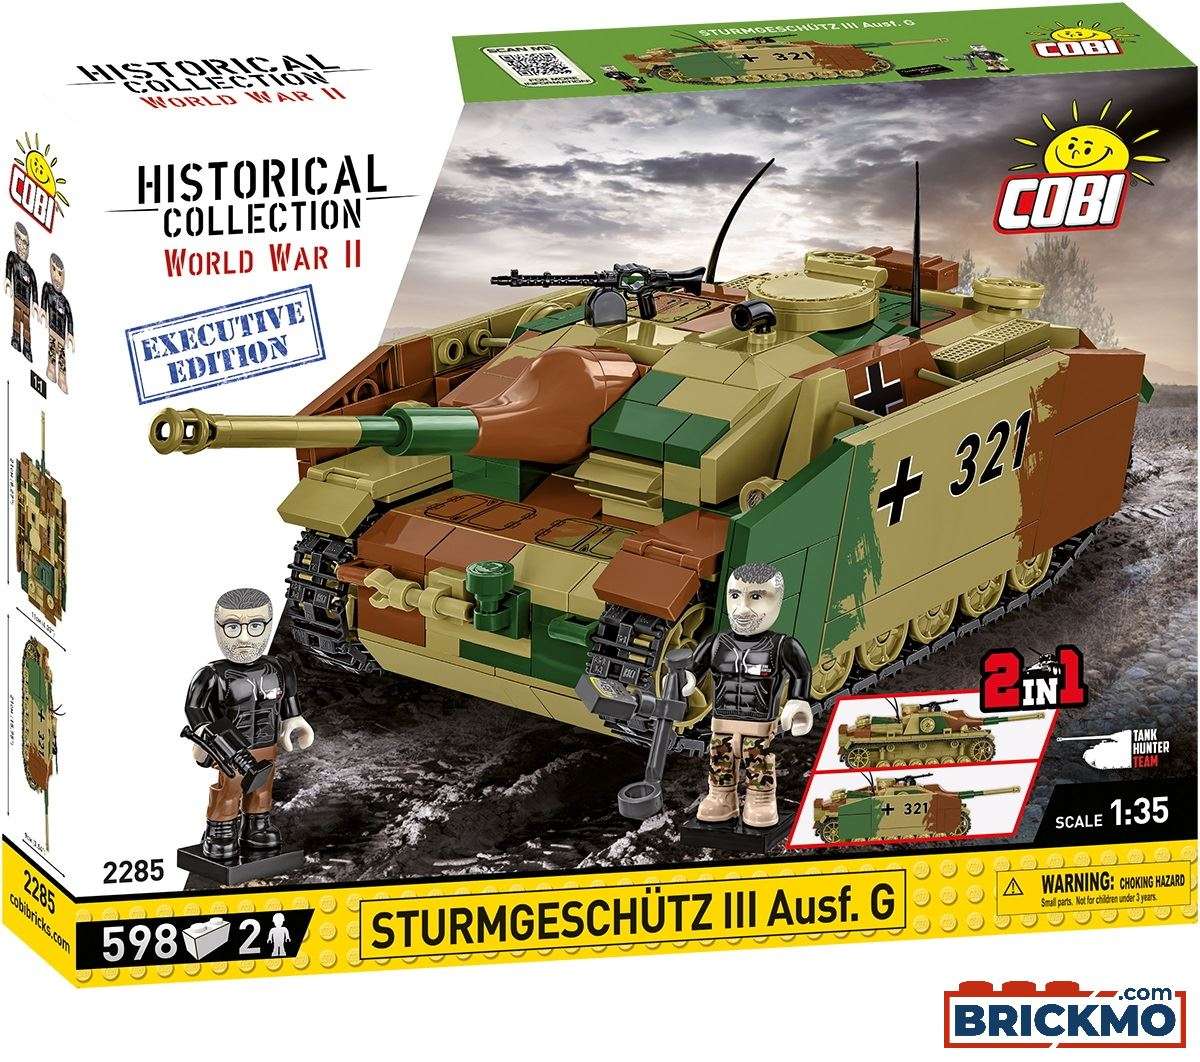 Cobi Executive Edition Historical Collection World War II 2285 Sturmgeschütz III ausf.G Tank Hunter